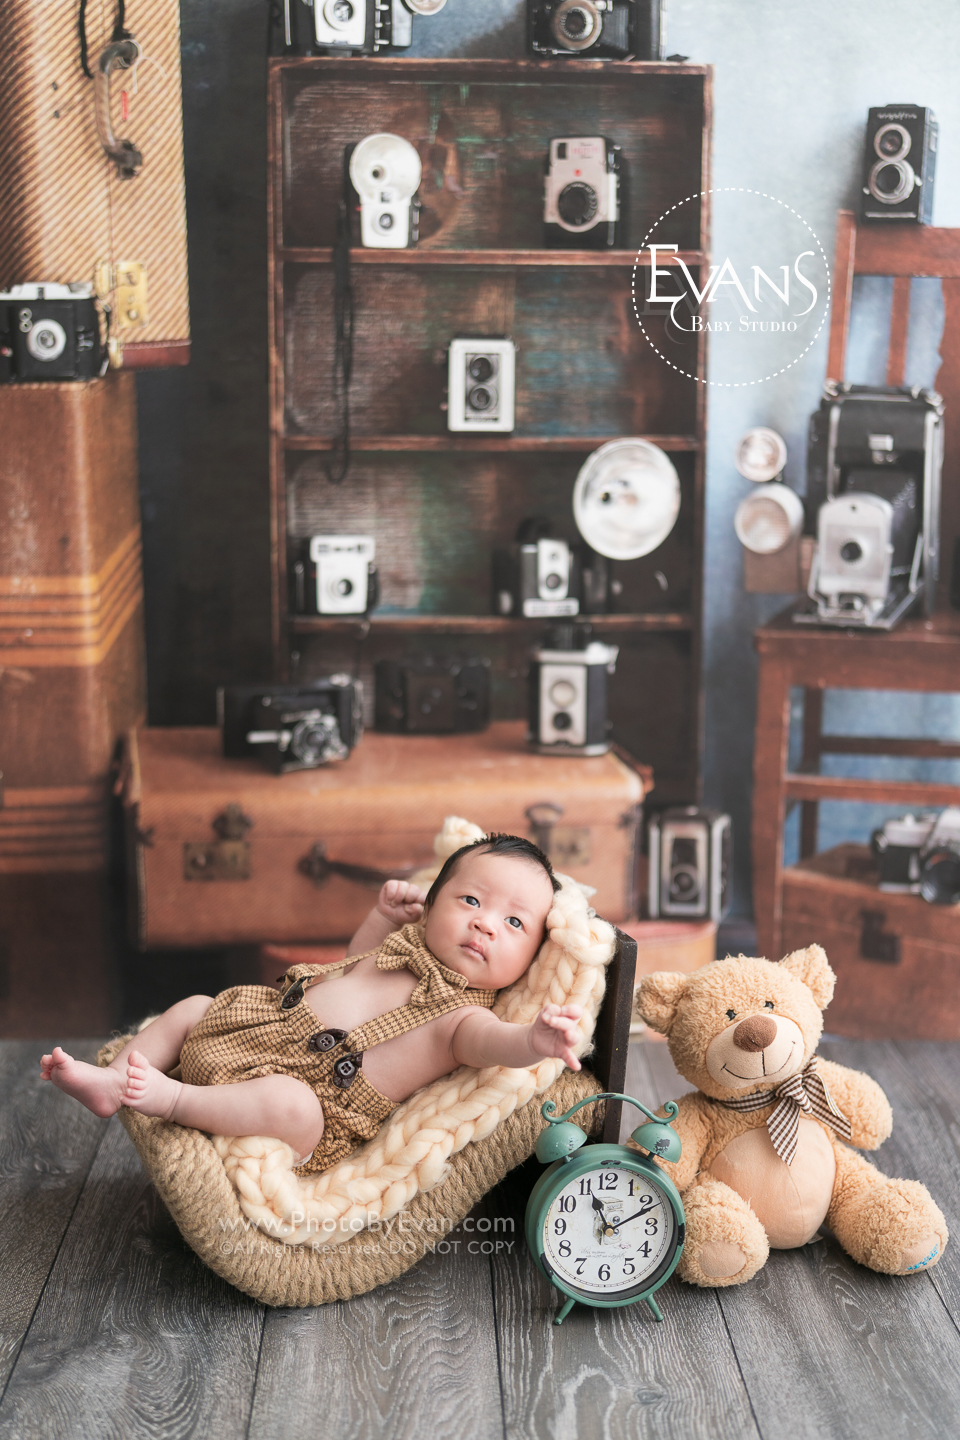 滿月嬰兒, 一個月嬰兒, 滿月bb, 滿月攝影, 一個月嬰兒攝影, bb 攝影, 嬰兒攝影, 初生攝影, baby photography, hong kong baby studio, baby studio